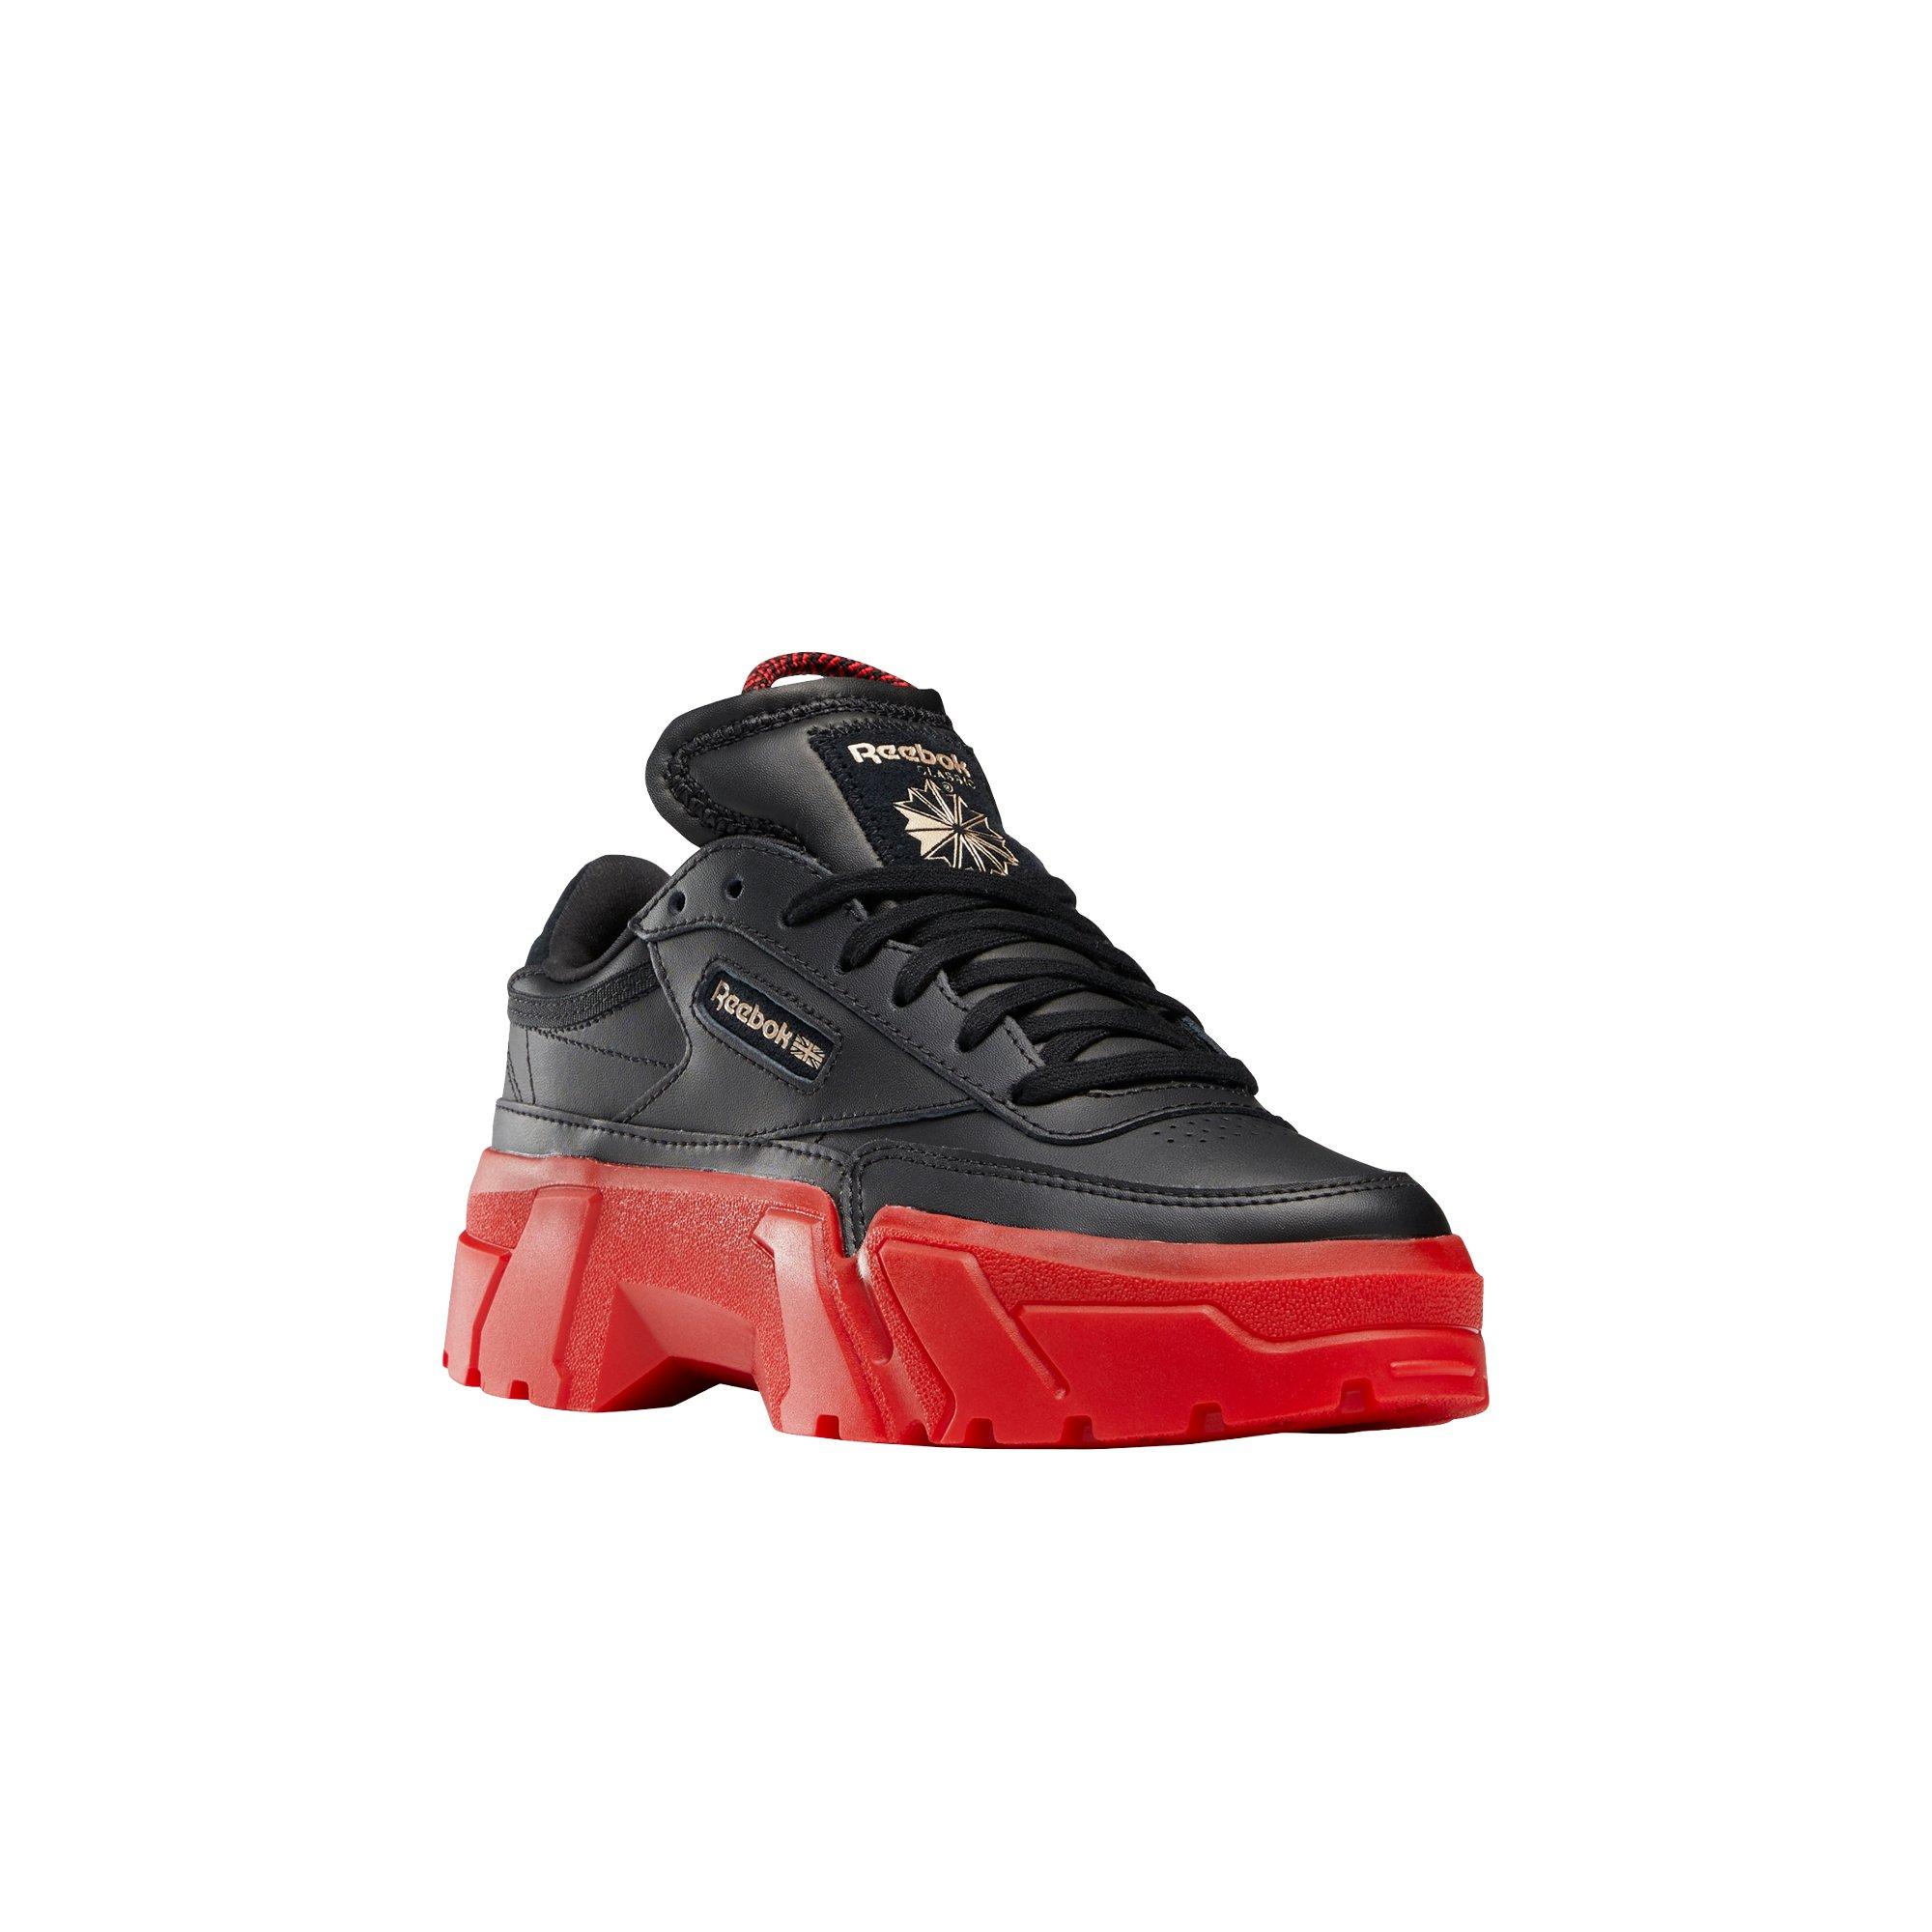 Sneakers Release – “Black/Red” Reebok Cardi B